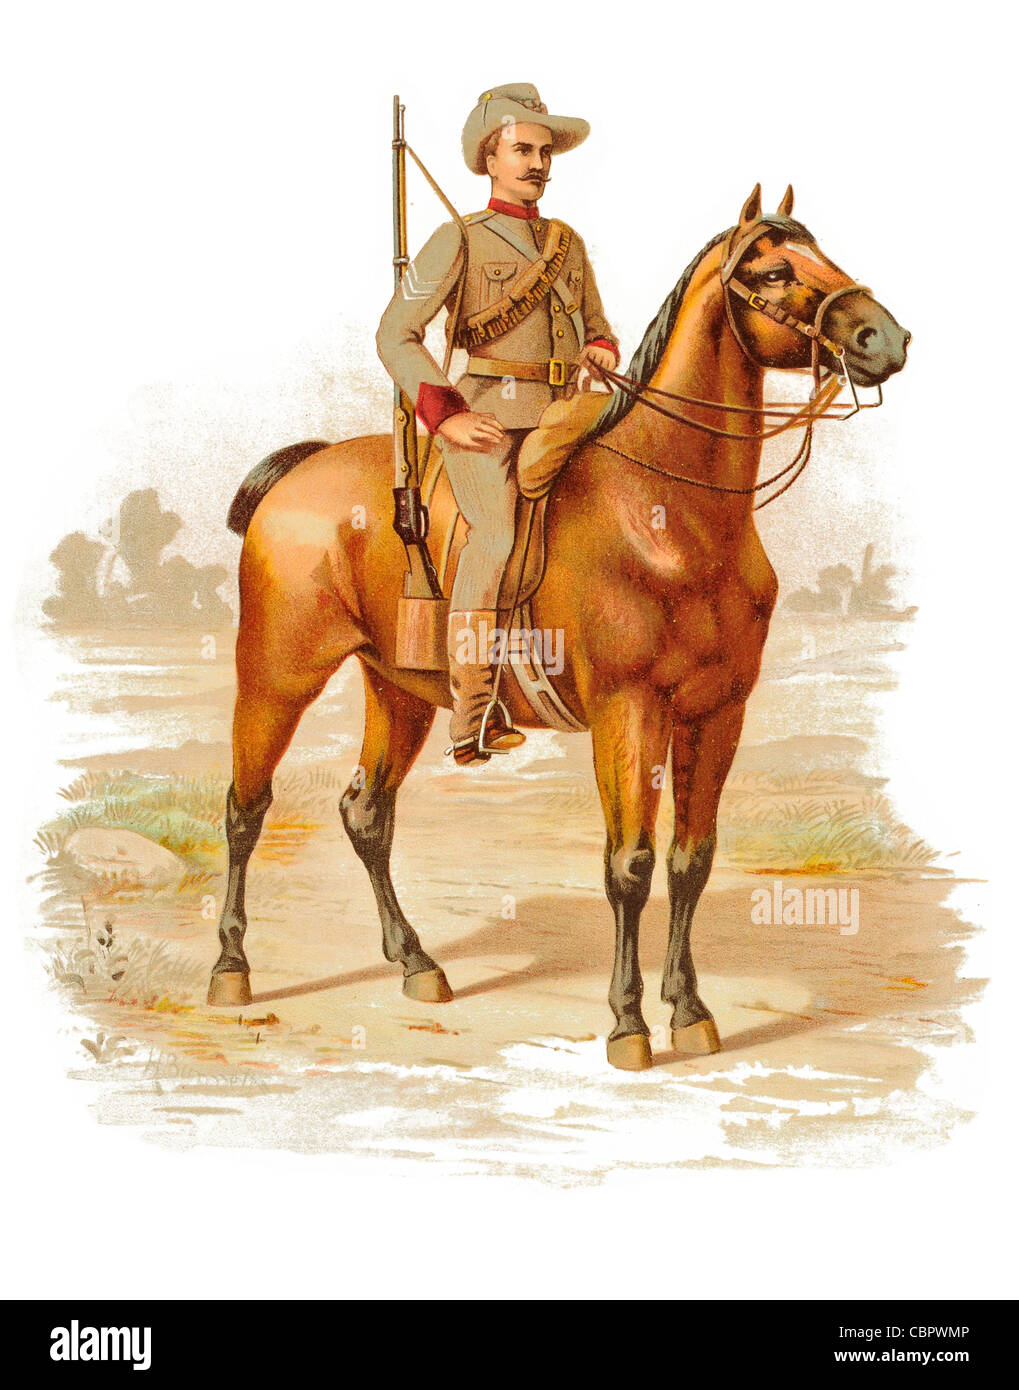 Viktorianische angebrachte Gewehre australische Truppen Zweiter Boer-Krieg-Colonel Tom Price Kavallerie montiert Stockfoto